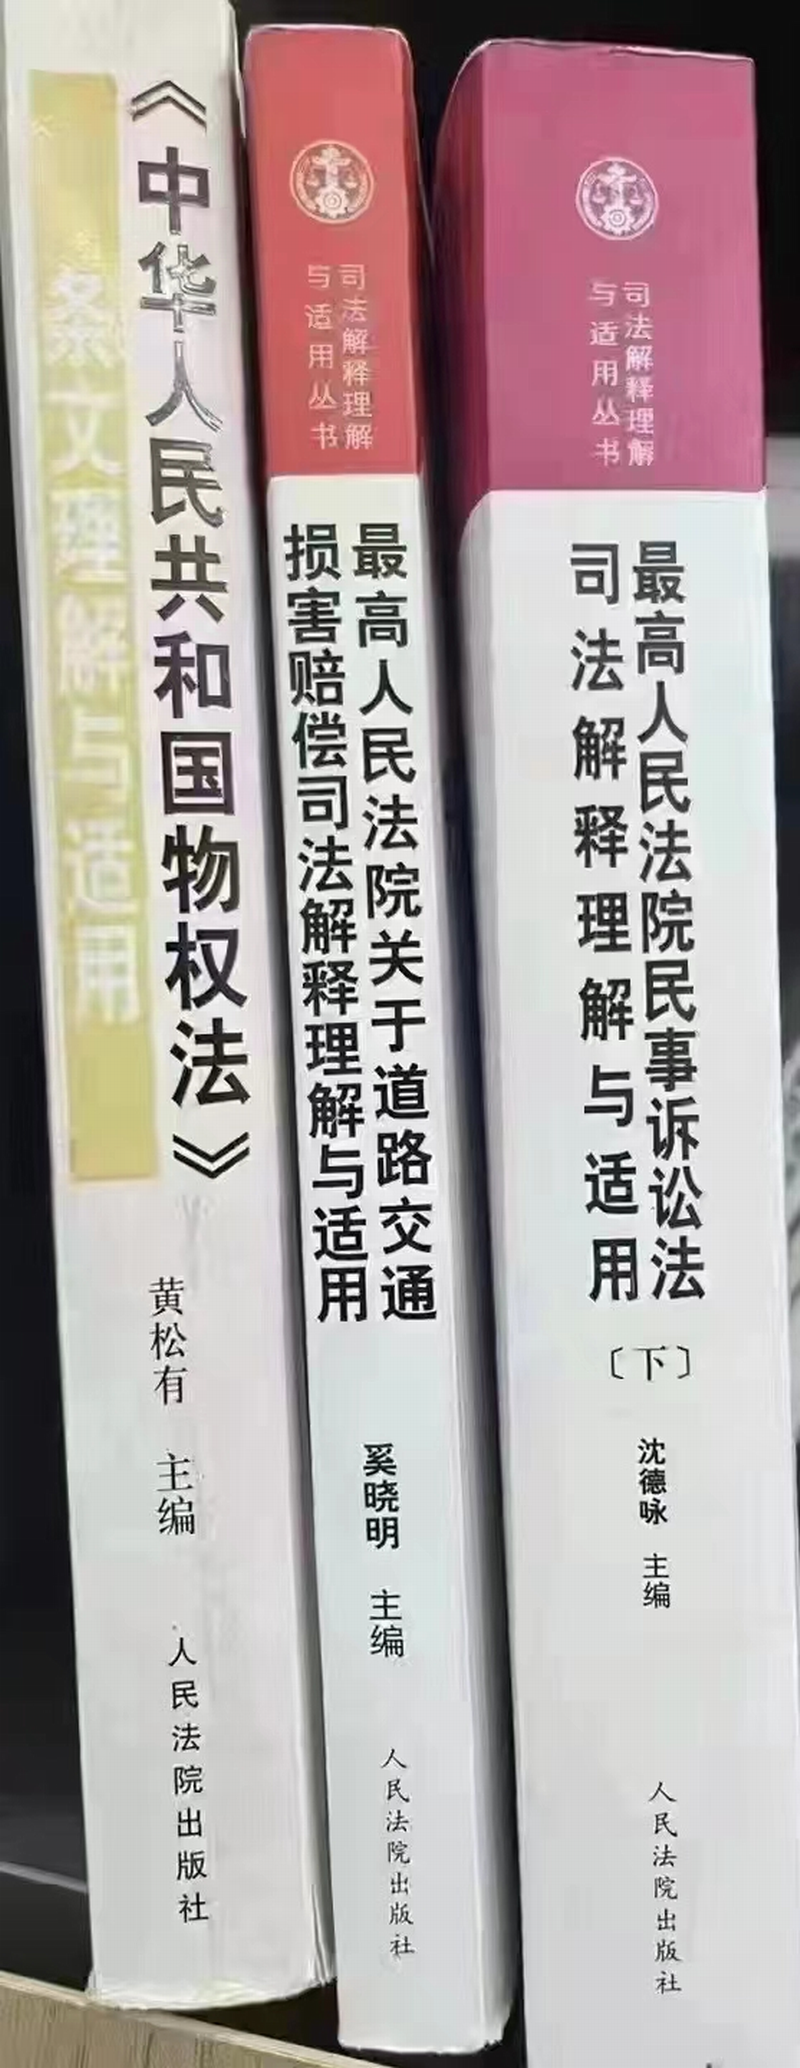 图为三本书的主编黄松有、奚晓明、沈德咏.png